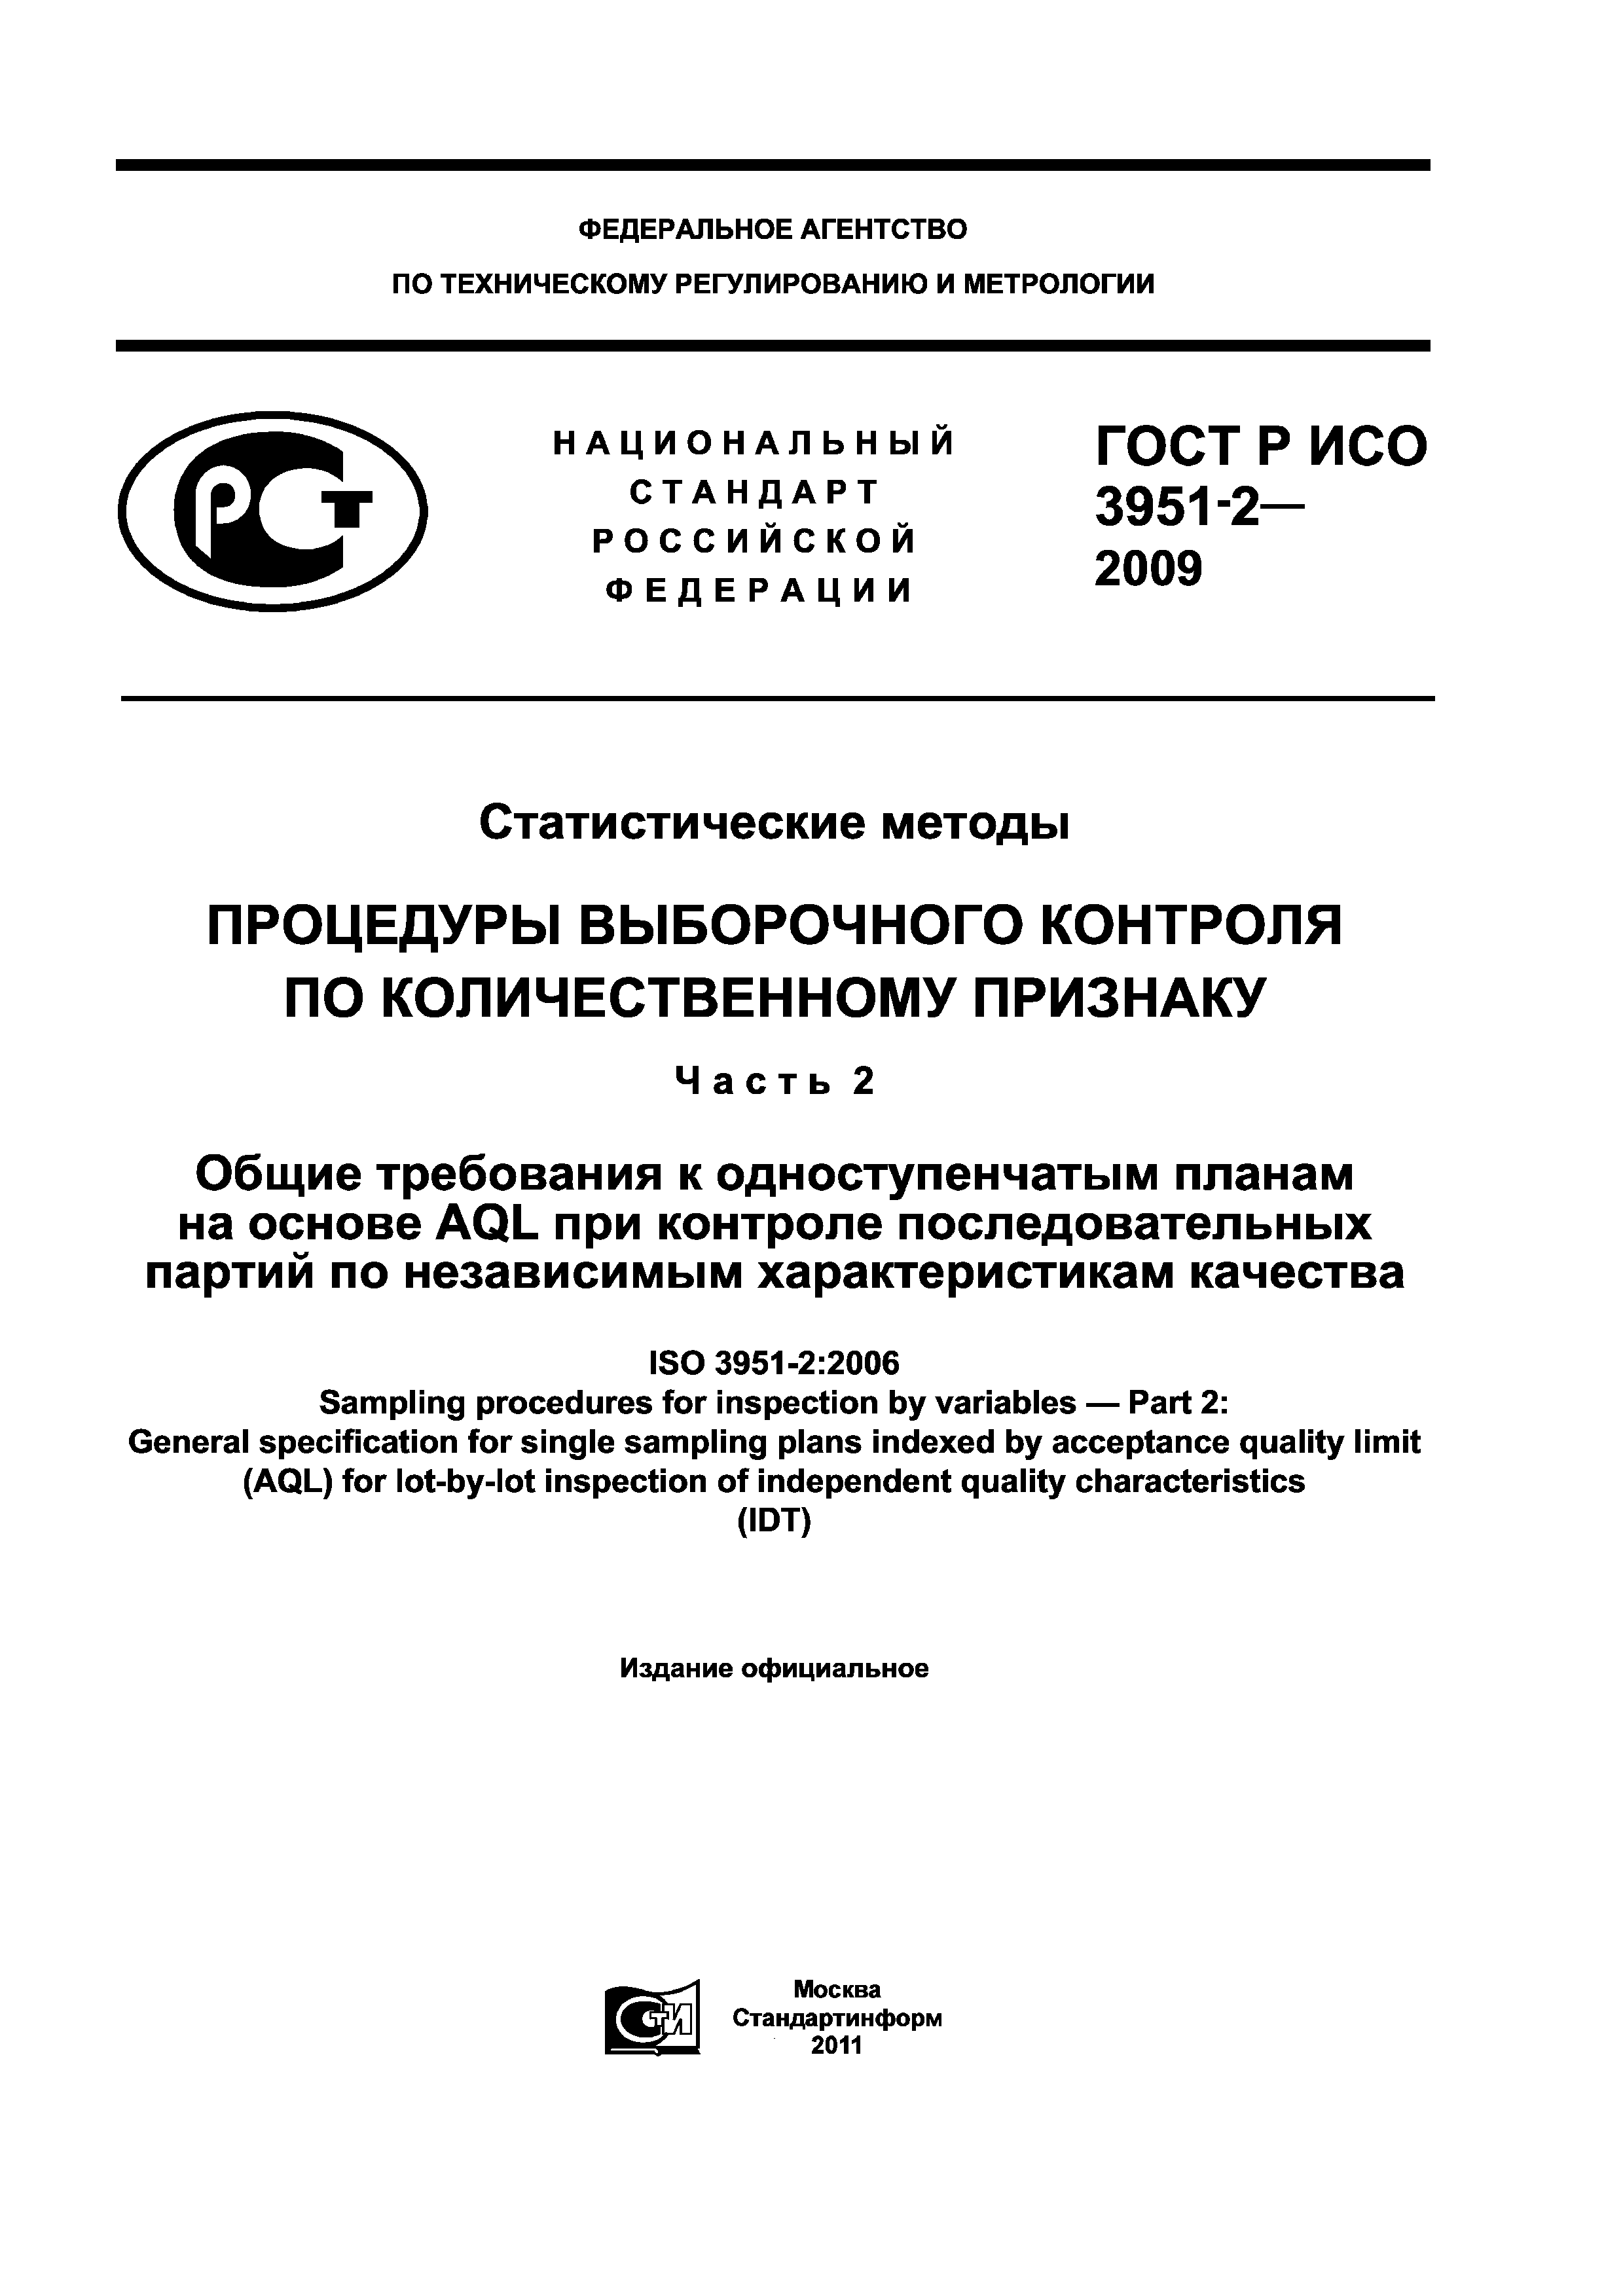 ГОСТ Р ИСО 3951-2-2009